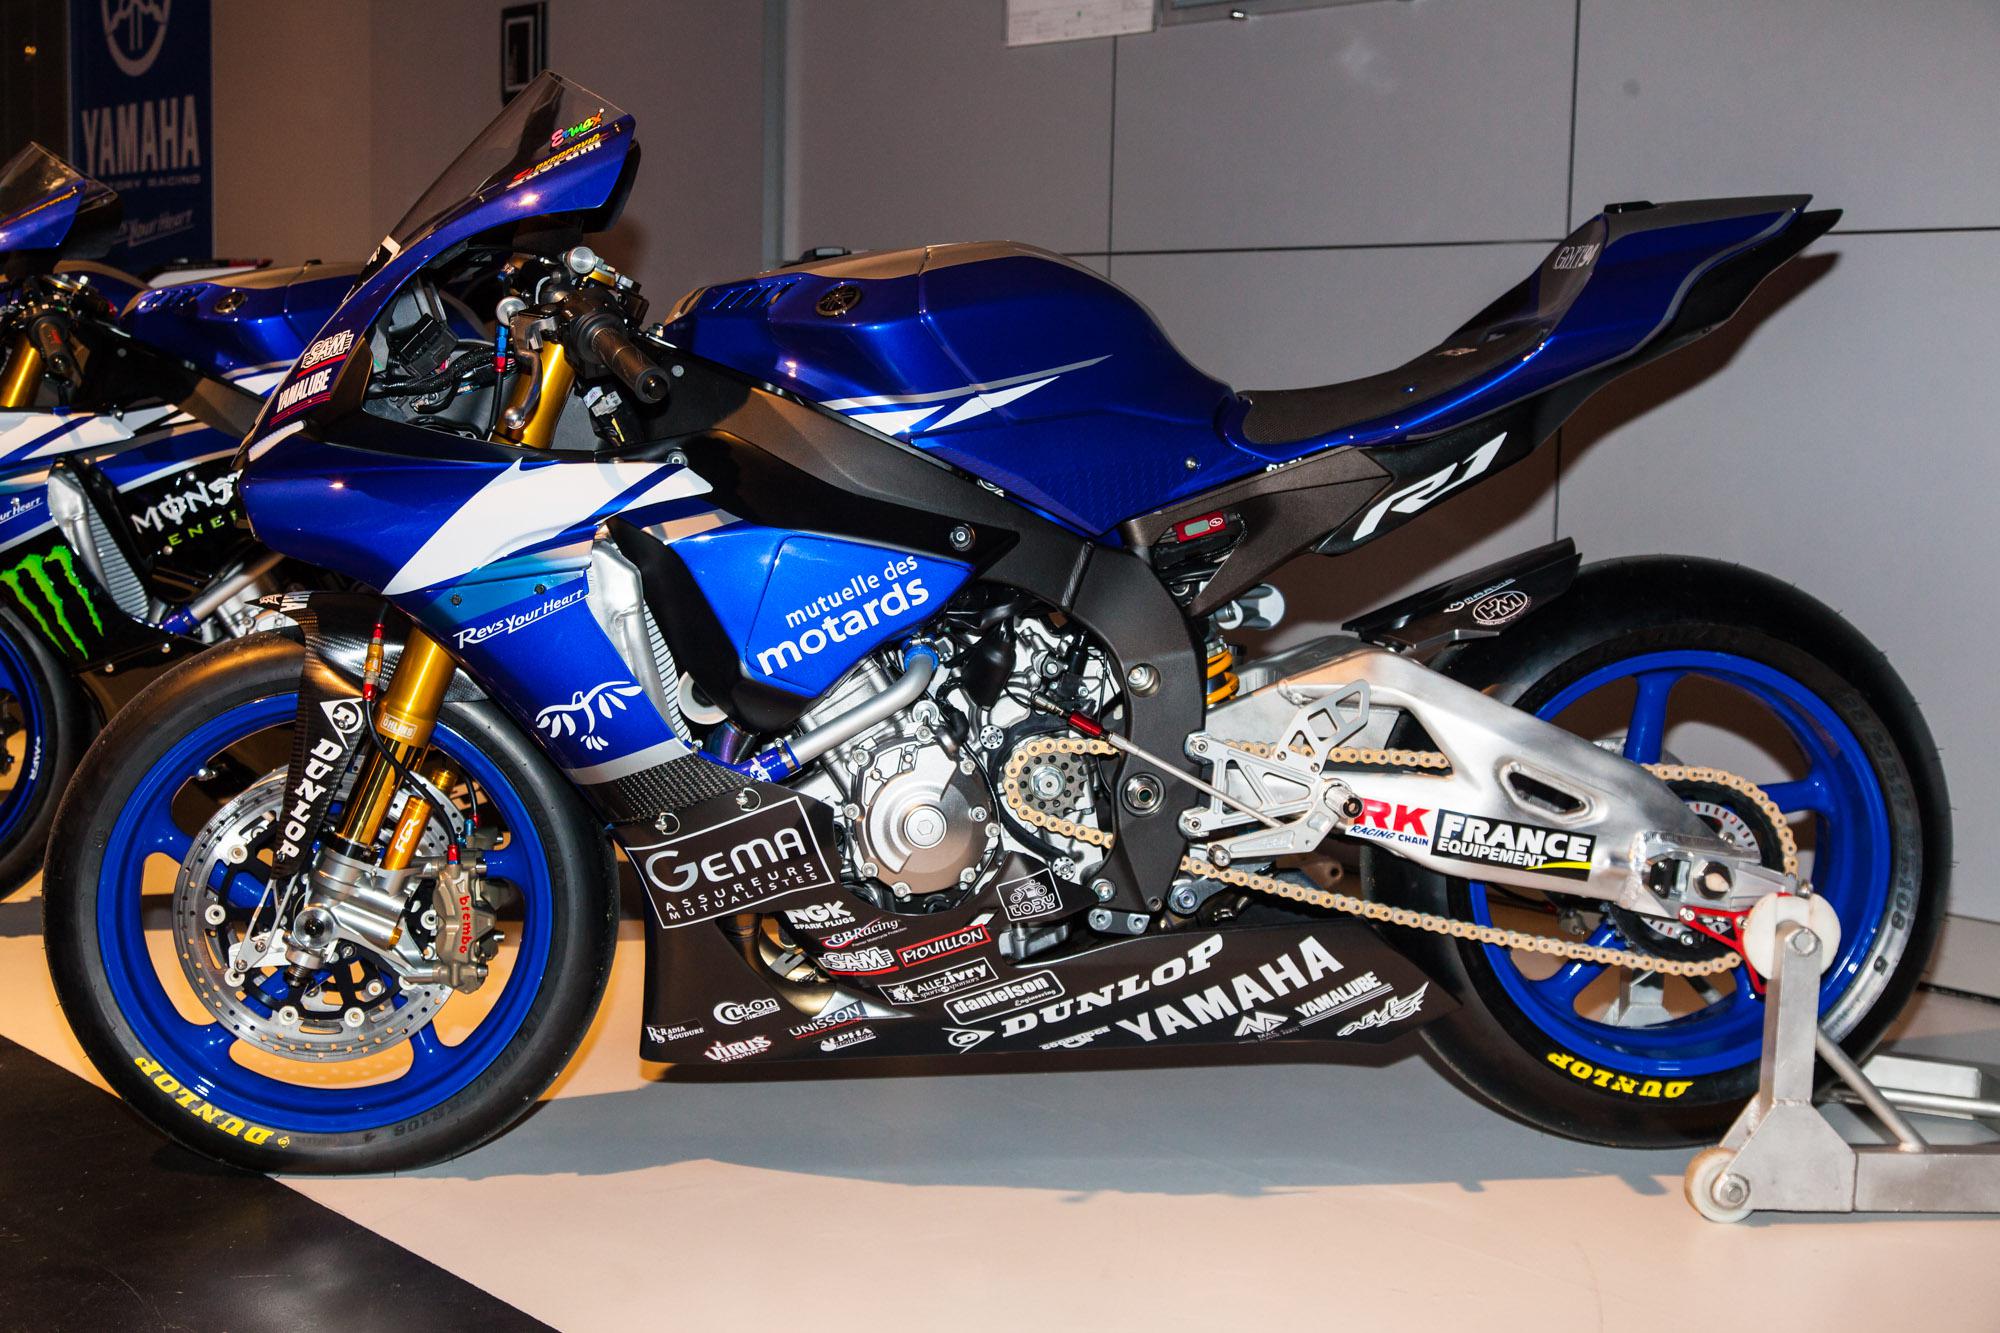 Yamaha YZF-R1 Factory Racing Teams 2015 Motorrad Fotos & Motorrad Bilder